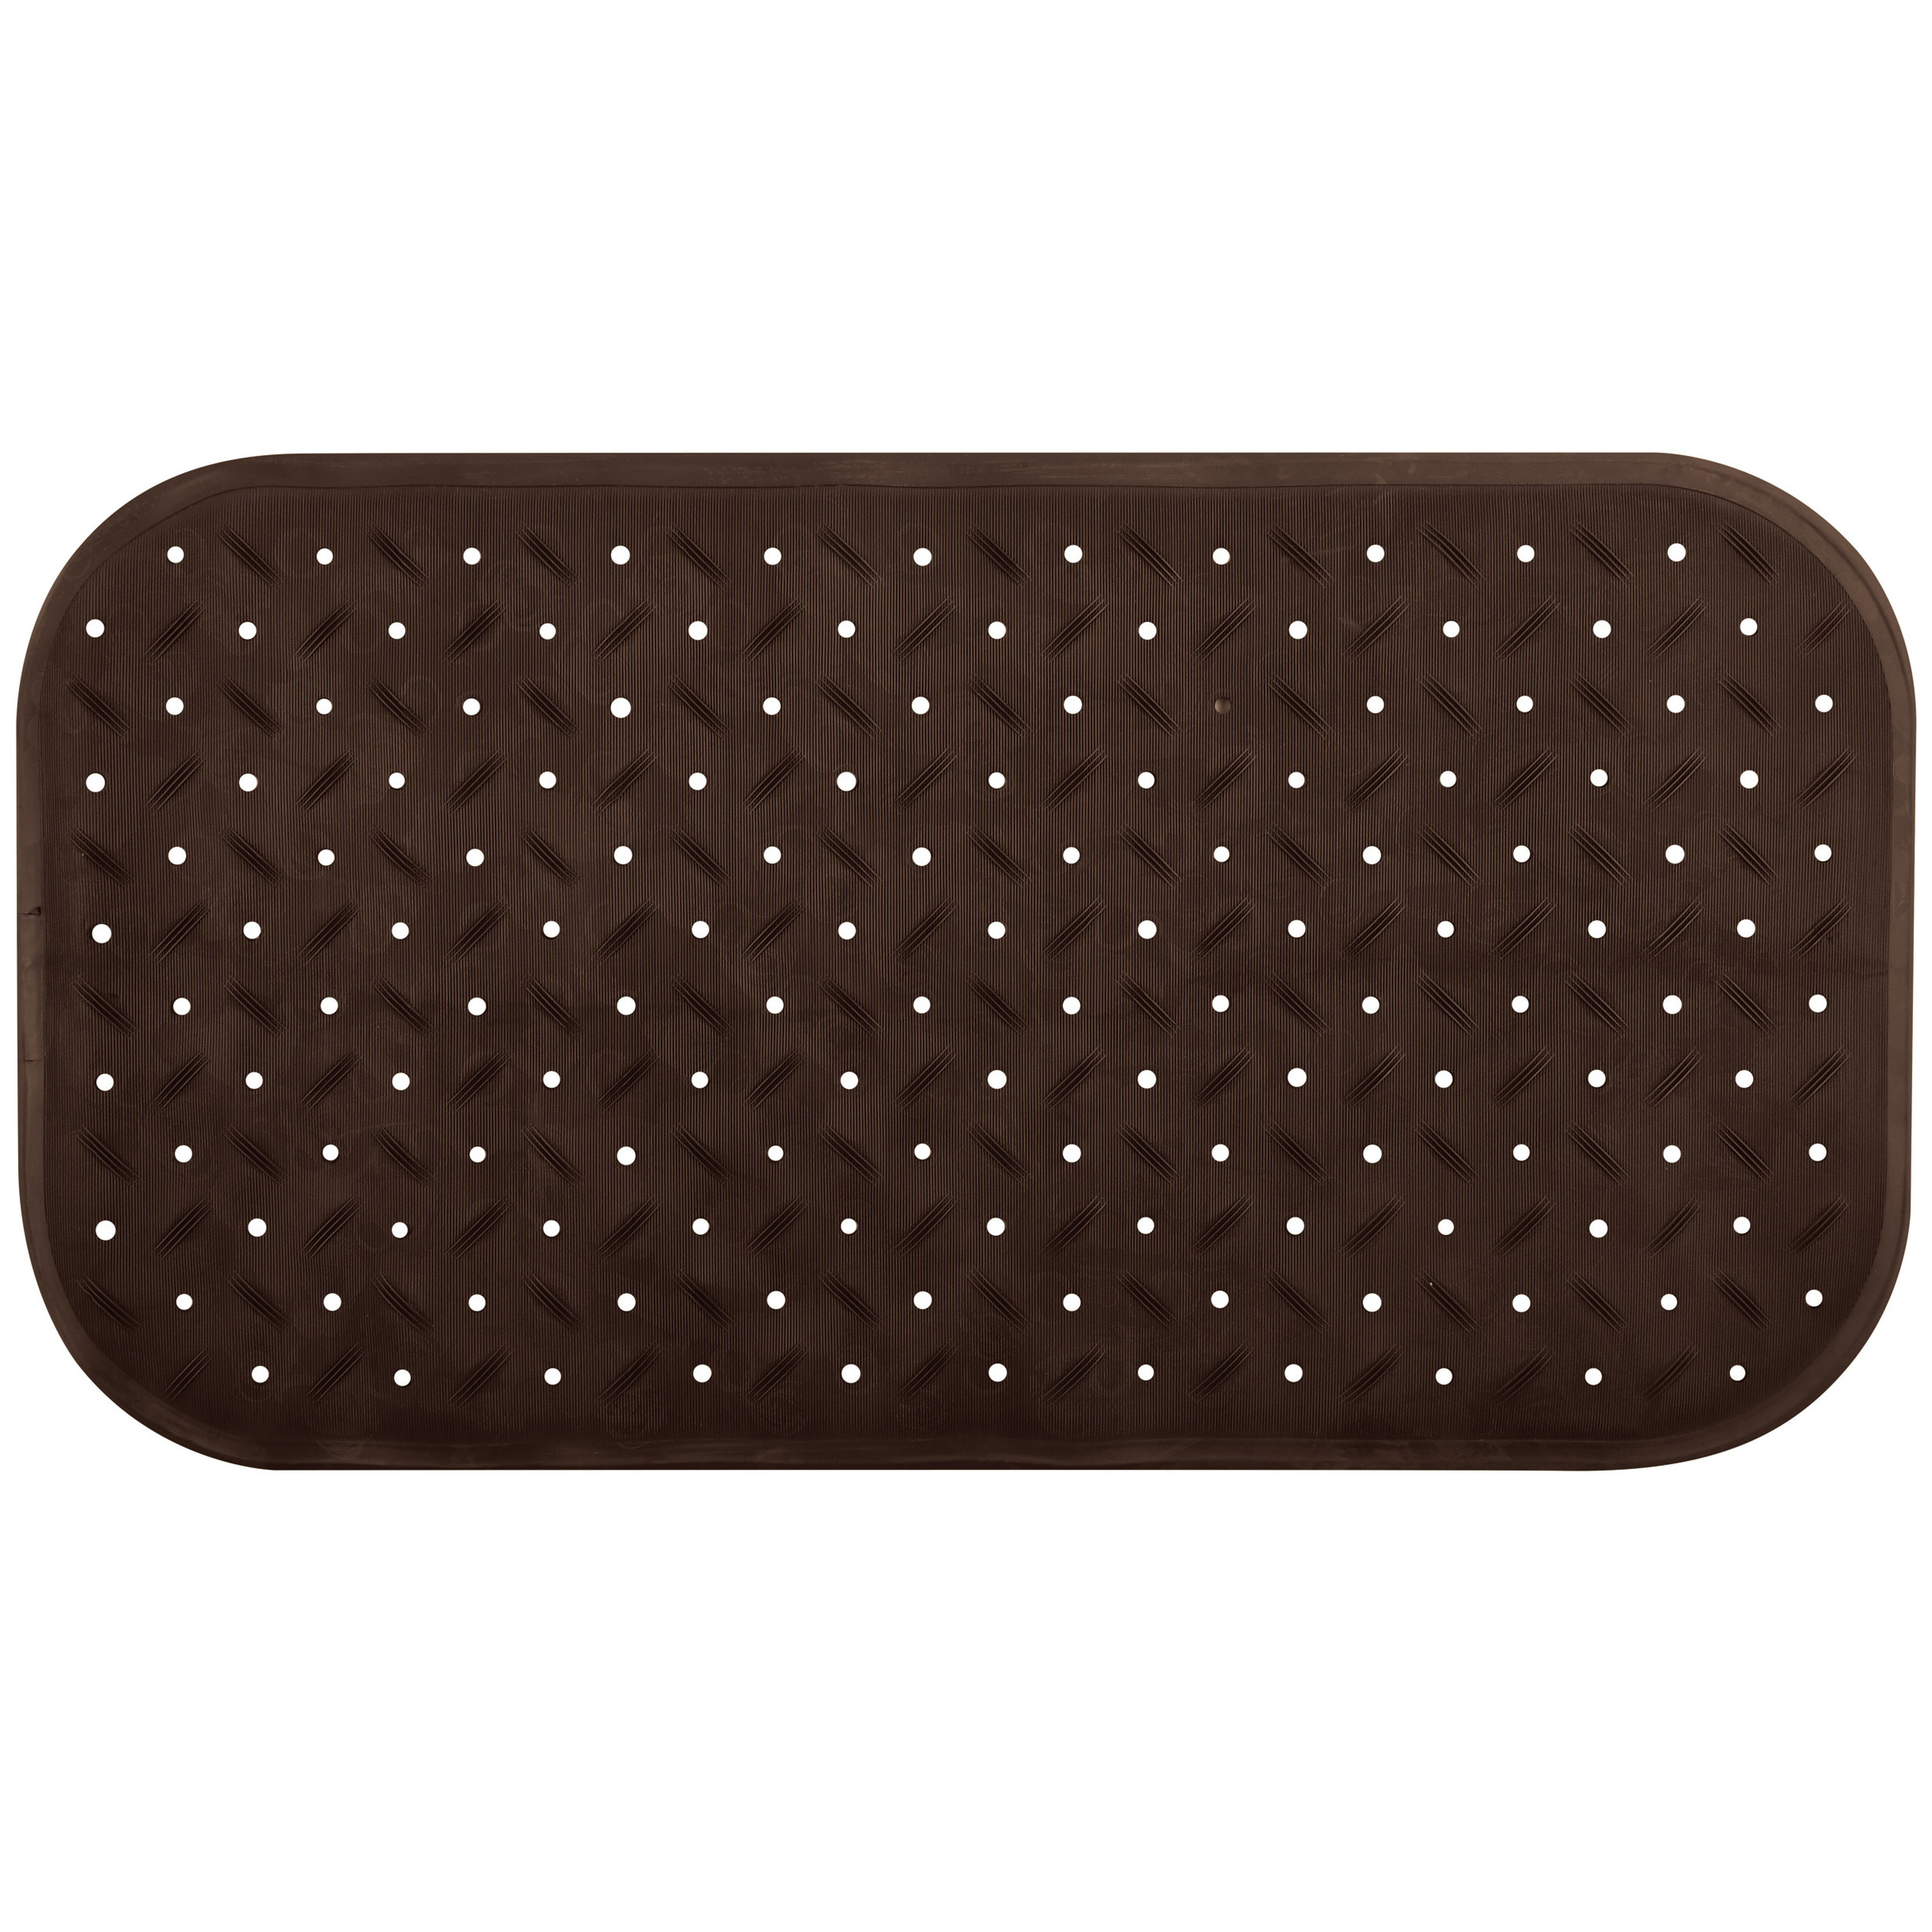 Douche-bad anti-slip mat badkamer rubber bruin 36 x 76 cm rechthoek